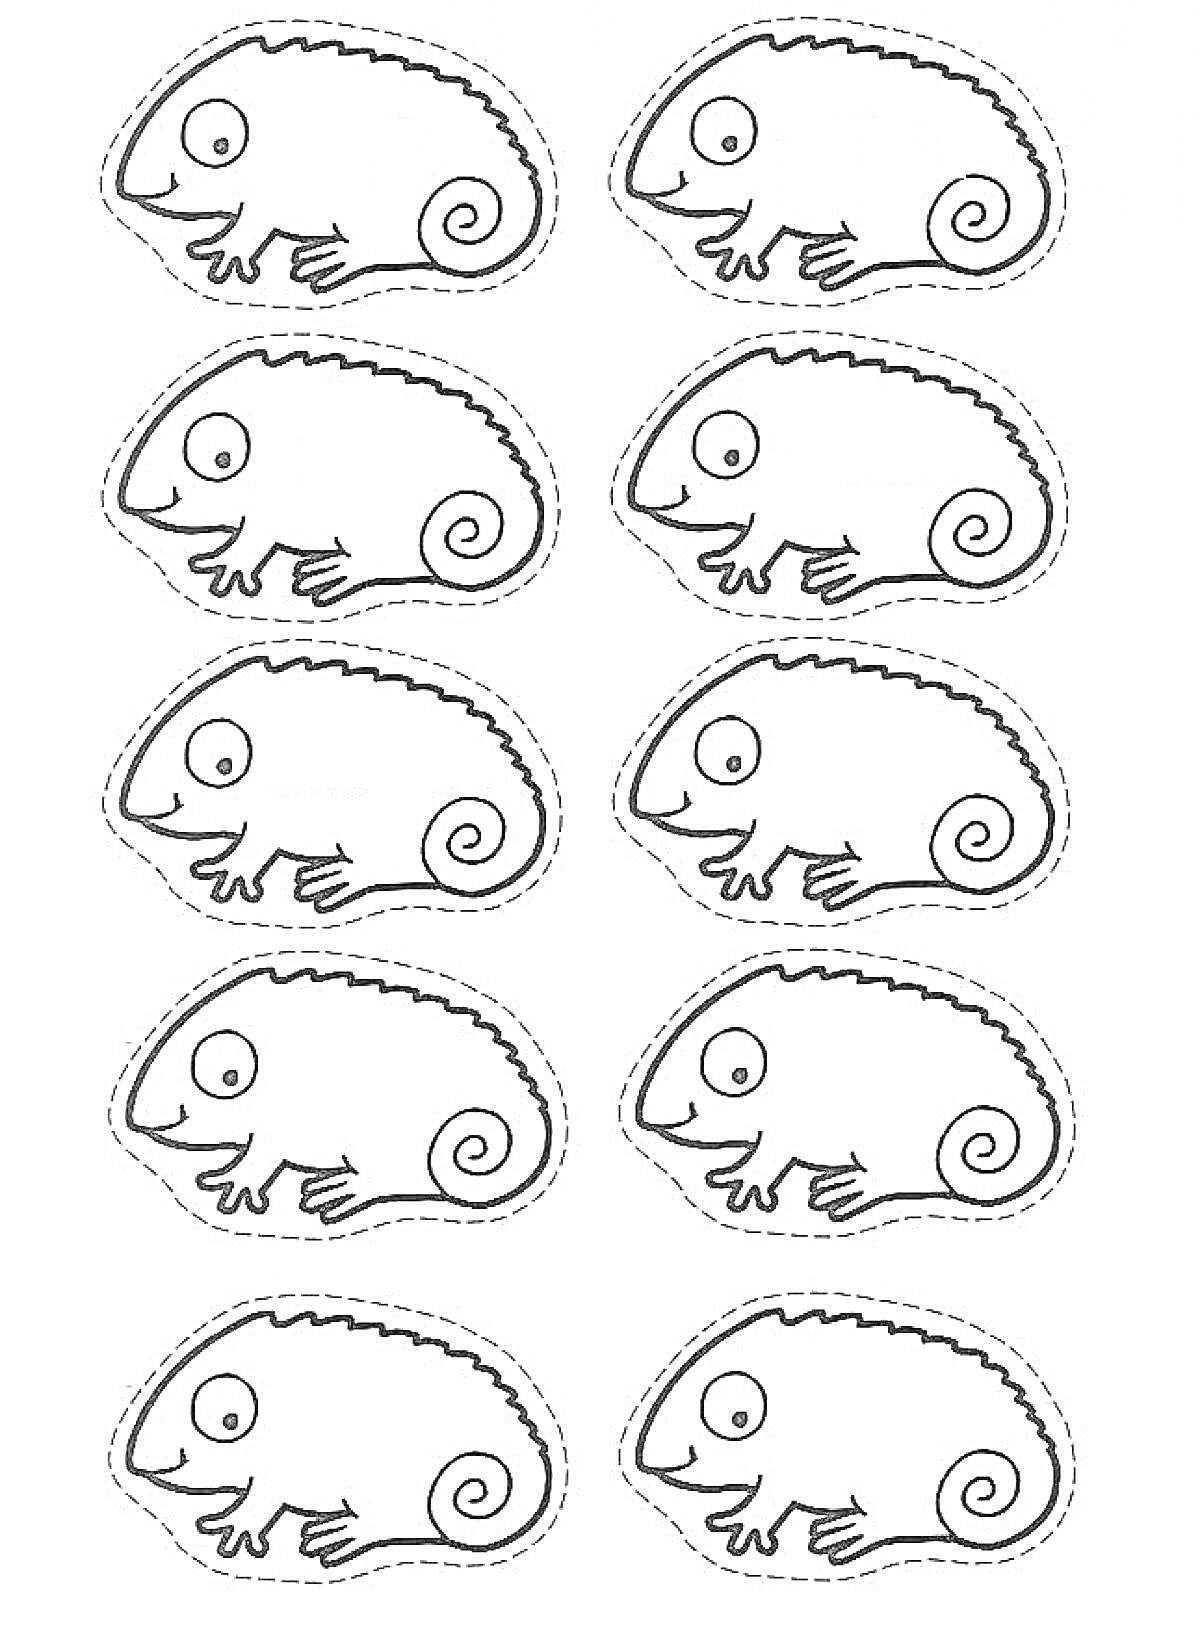 Десять нарисованных хамелеонов, расположенных вертикально, каждый нарисован в виде мультяшного персонажа с завитком на хвосте и большими глазами.